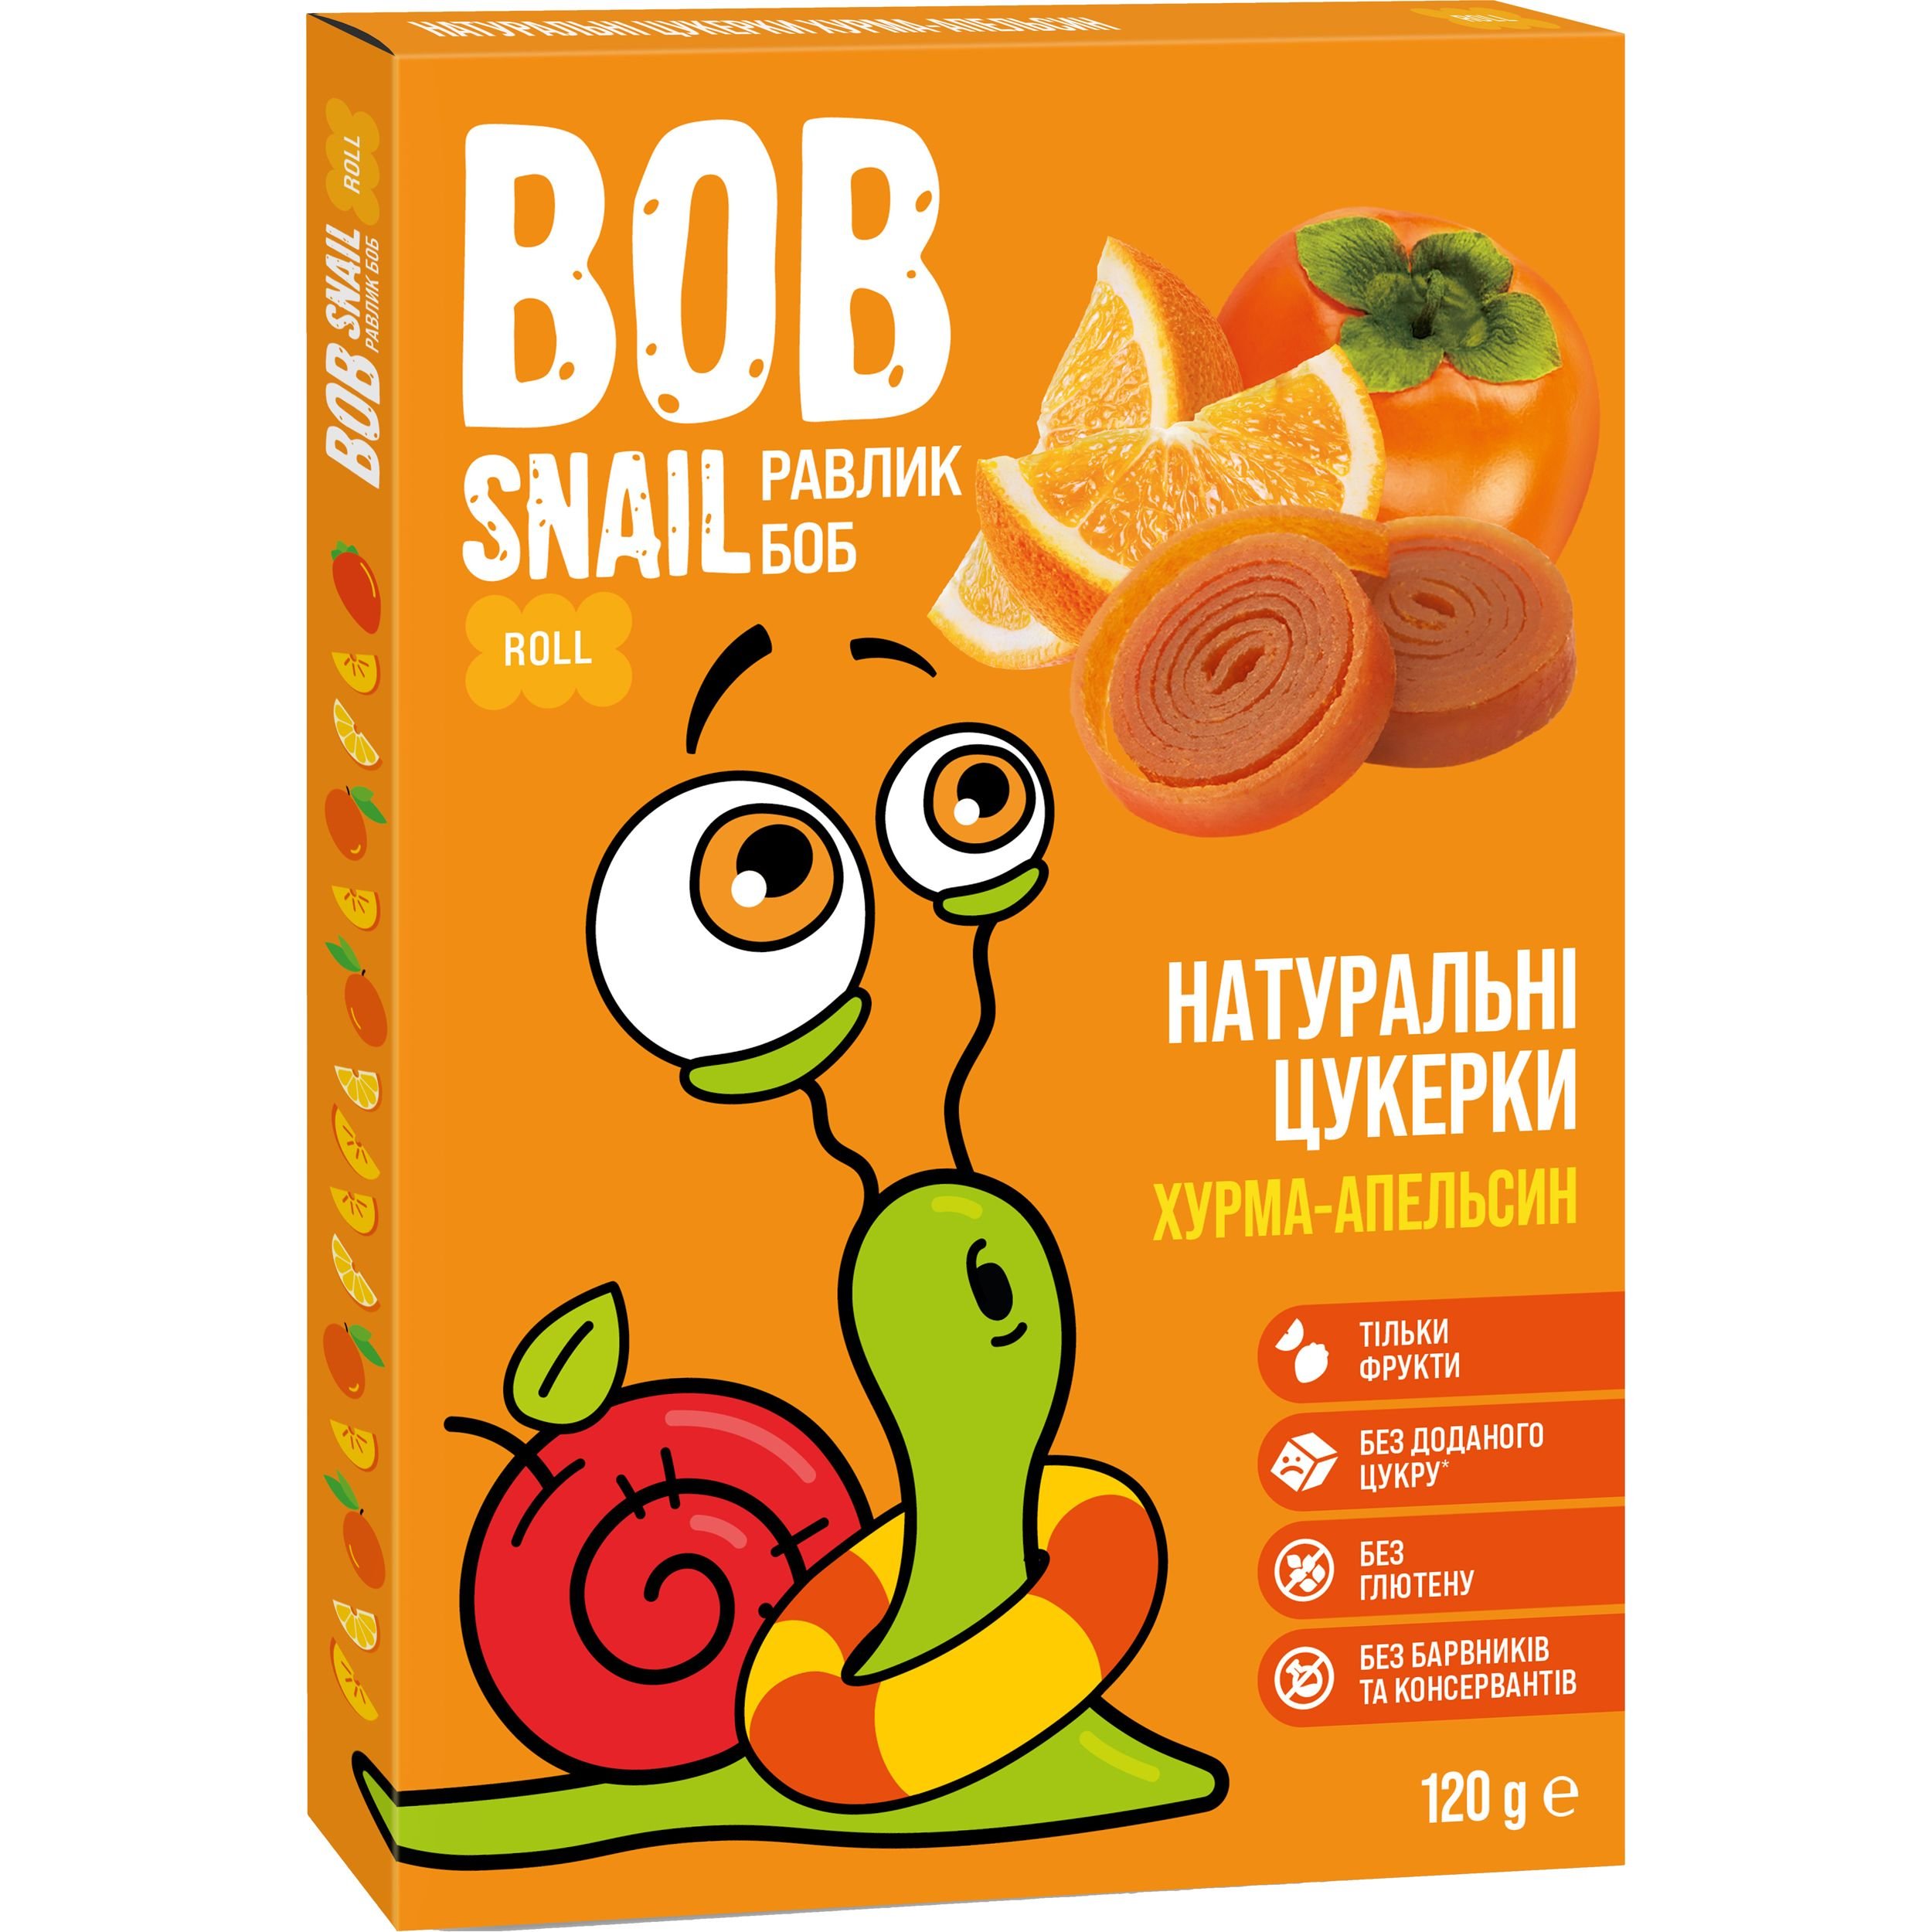 Фруктові цукерки Bob Snail з Хурми та Апельсину 120 г - фото 1